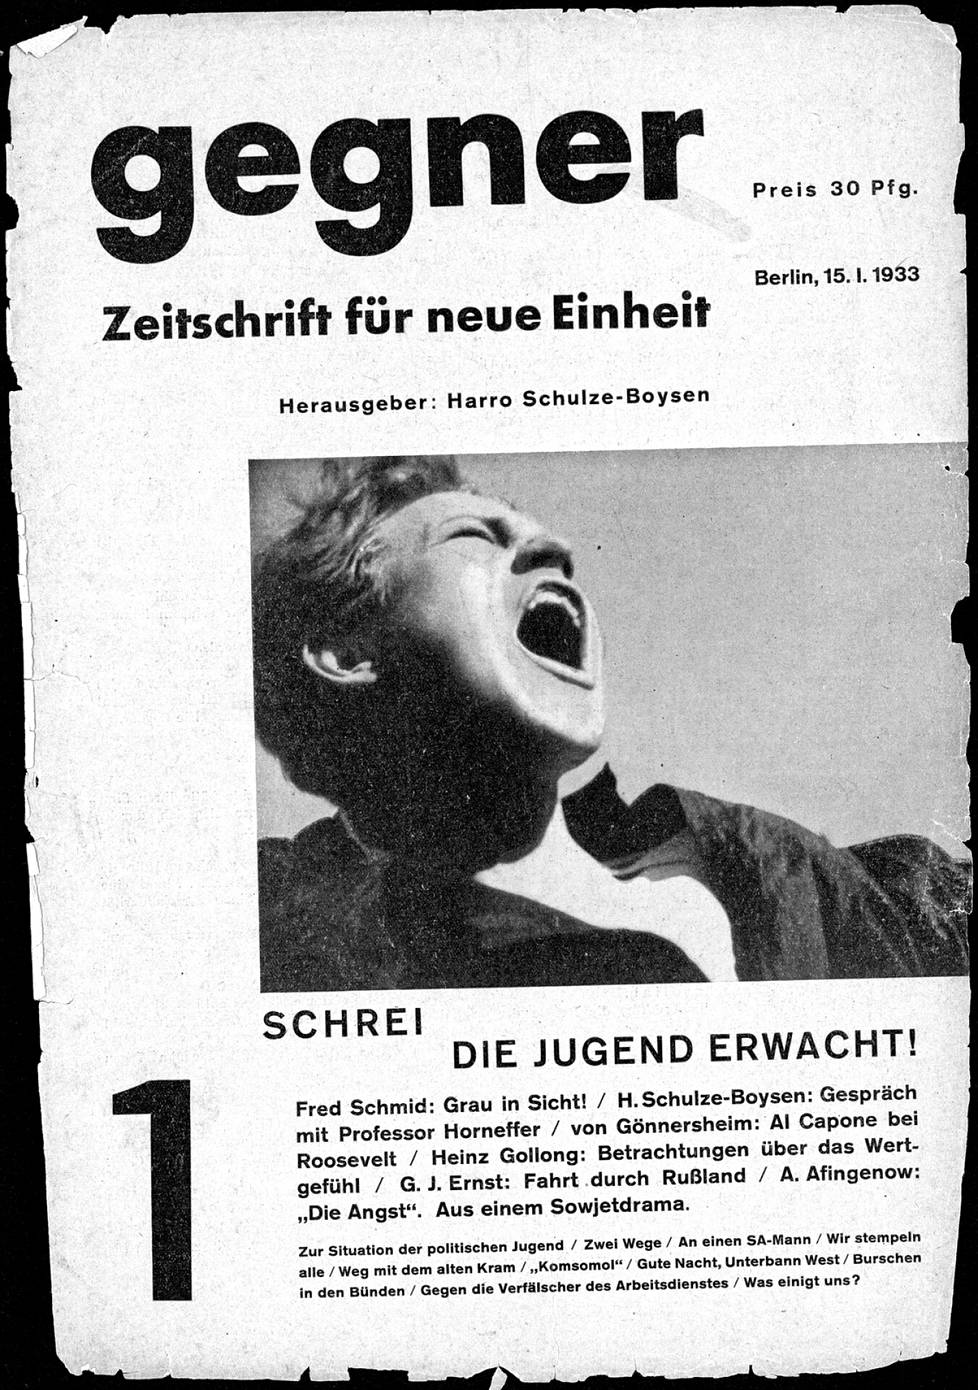 Harro Schulze-Boysenin päätoimittaman Gegner-lehden kansi vuodelta 1933.